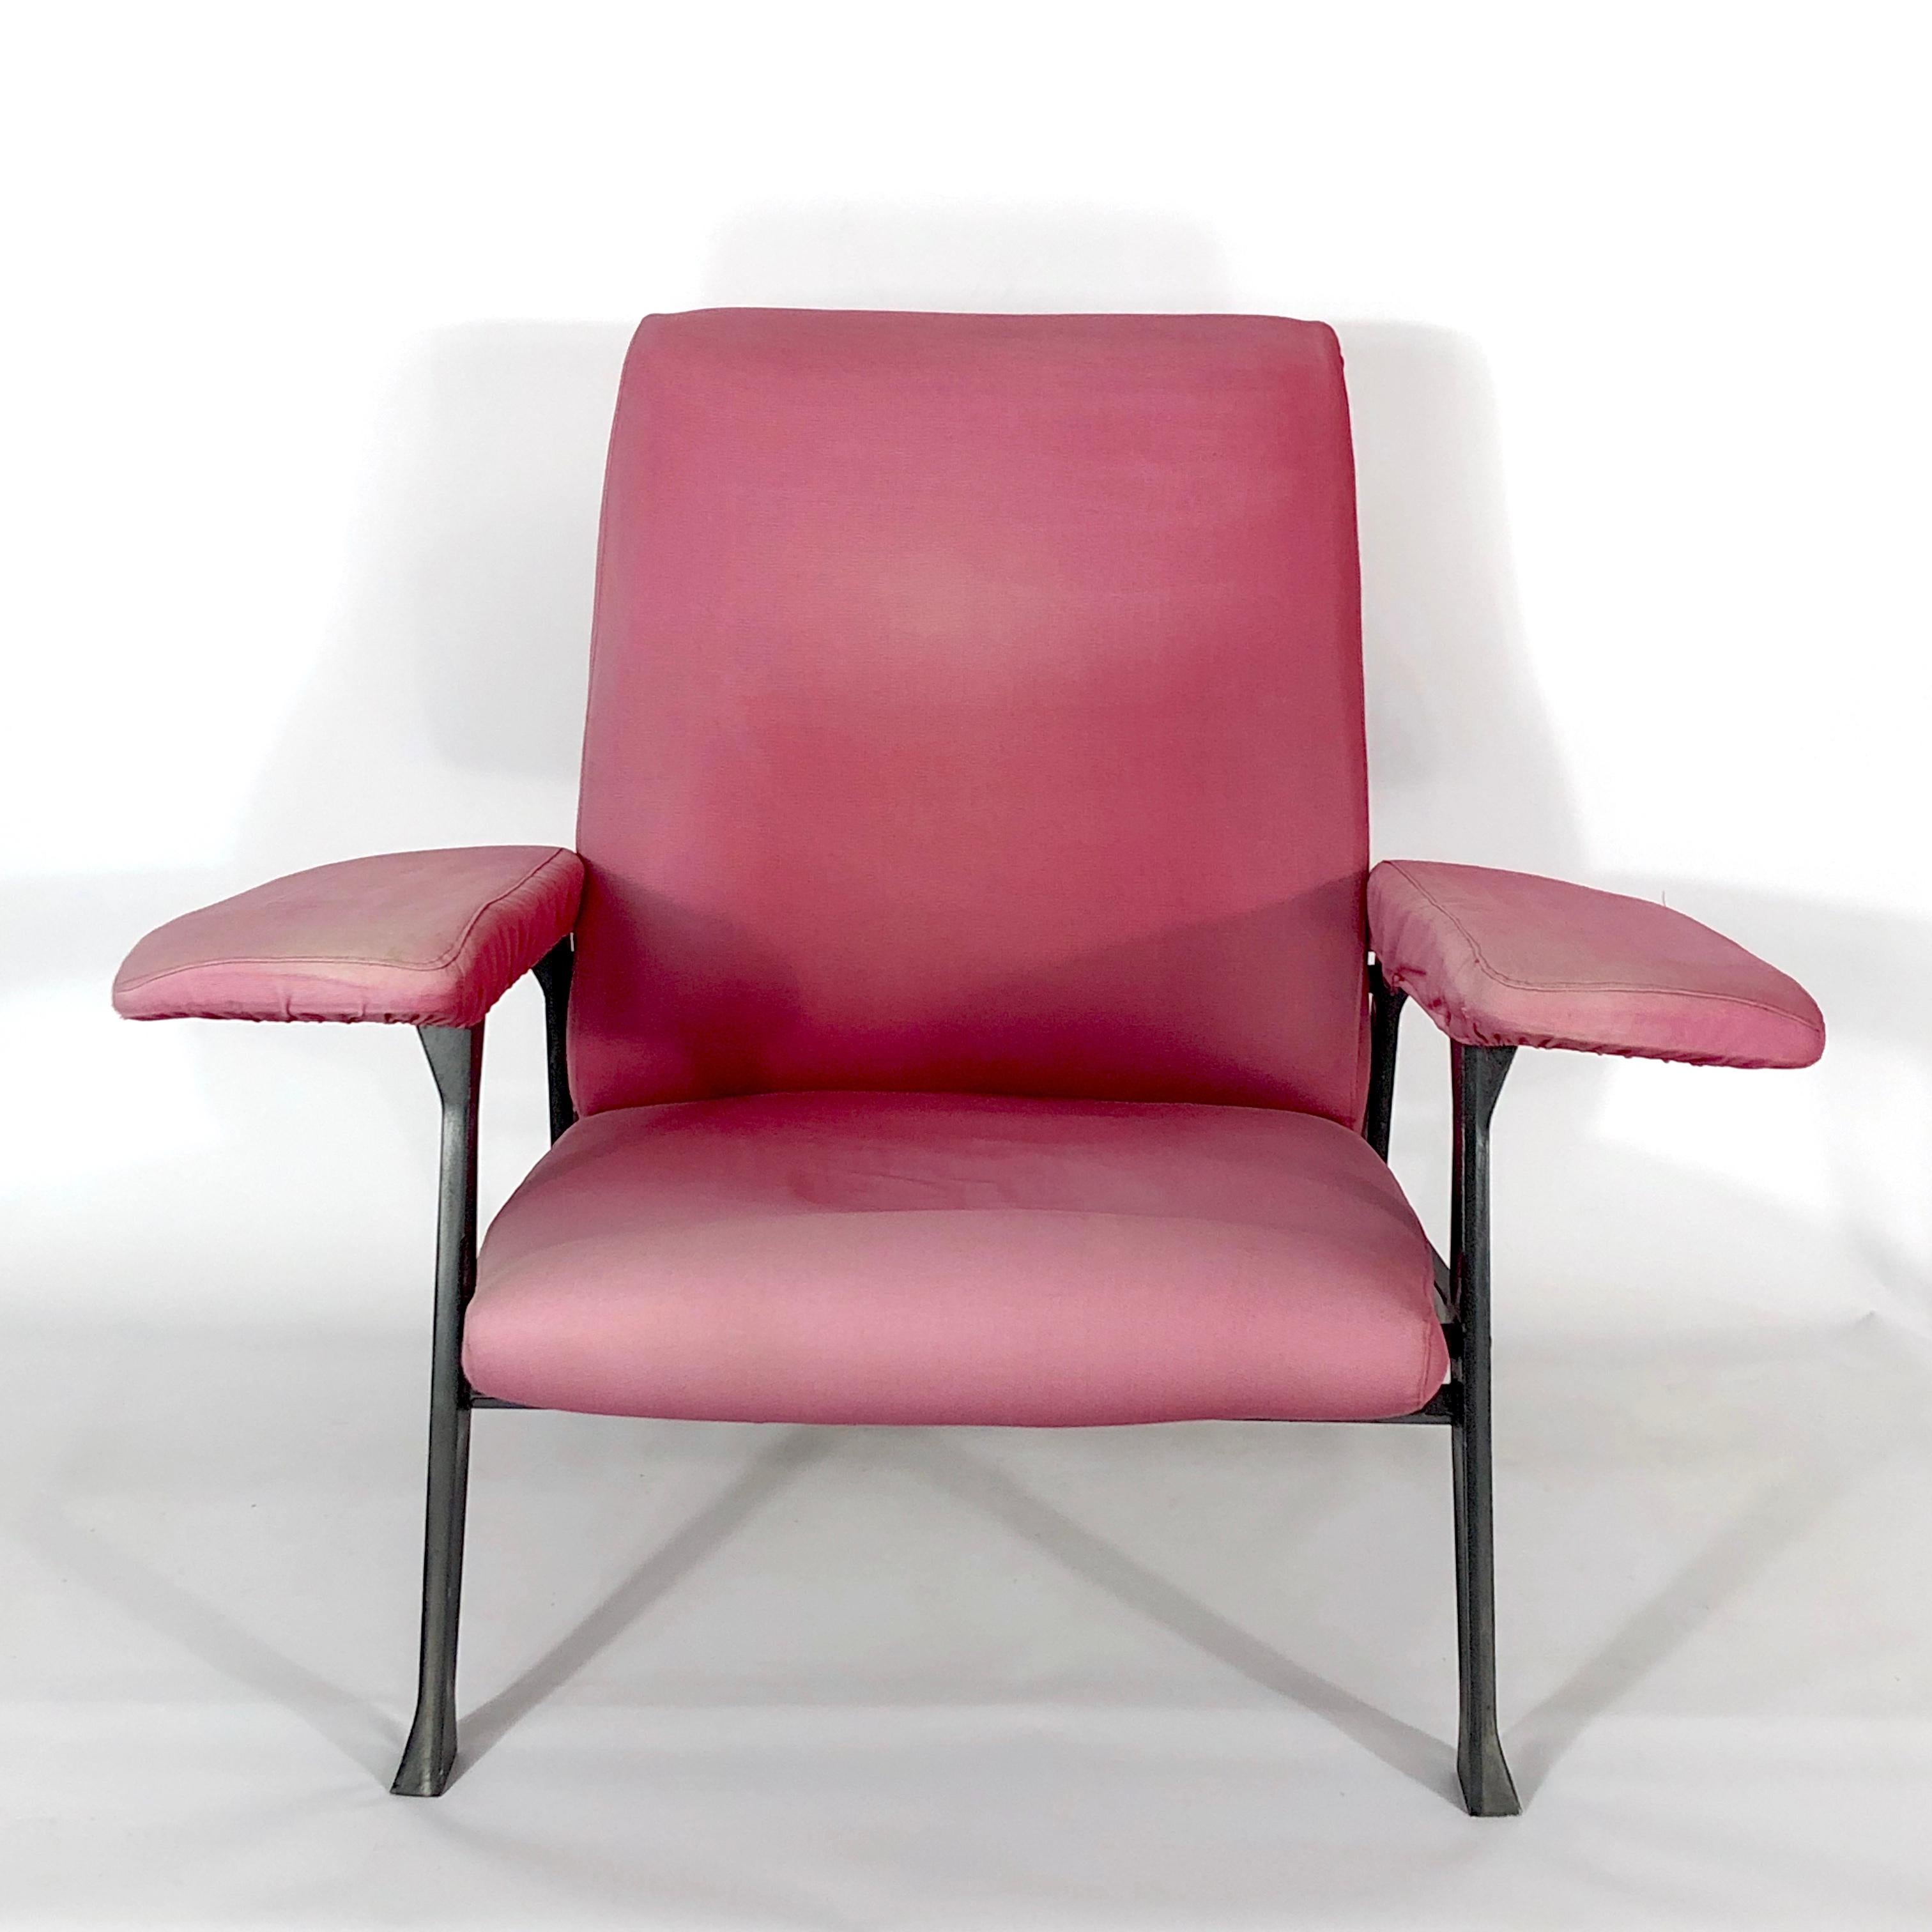 Première édition d'un fauteuil Design/One conçu par Roberto Menghi pour Arflex en 1958. Structure et tissu en acier verni. Label du fabricant d'origine. Malgré l'absence de déchirures, le tissu présente des traces évidentes d'âge et d'utilisation.